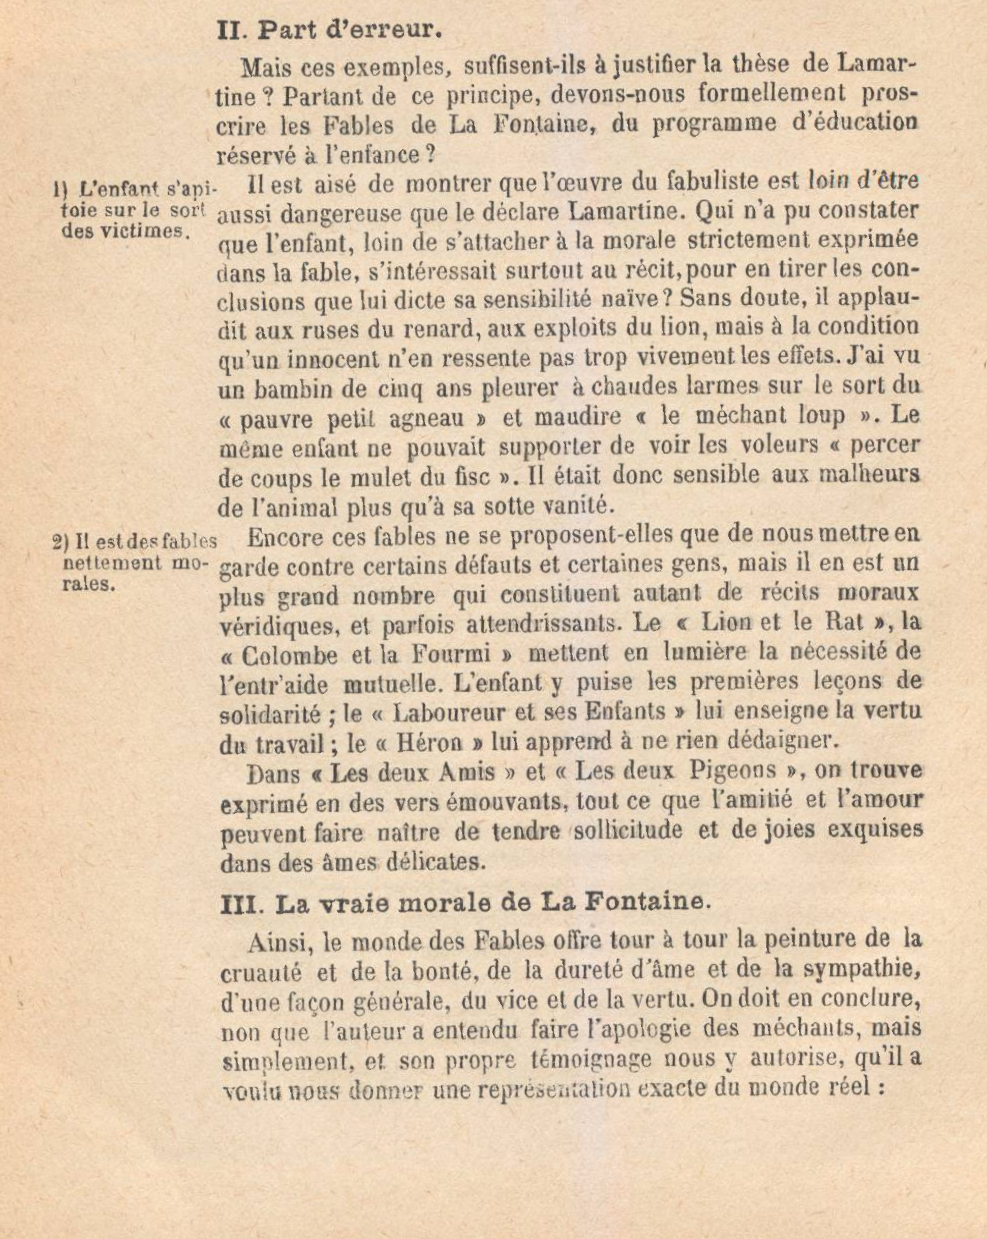 Prévisualisation du document Lamartine reprochait aux fables de La Fontaine d'être « immorales, fausses et cruelles » ? Que pensez-vous de cette appréciation ?